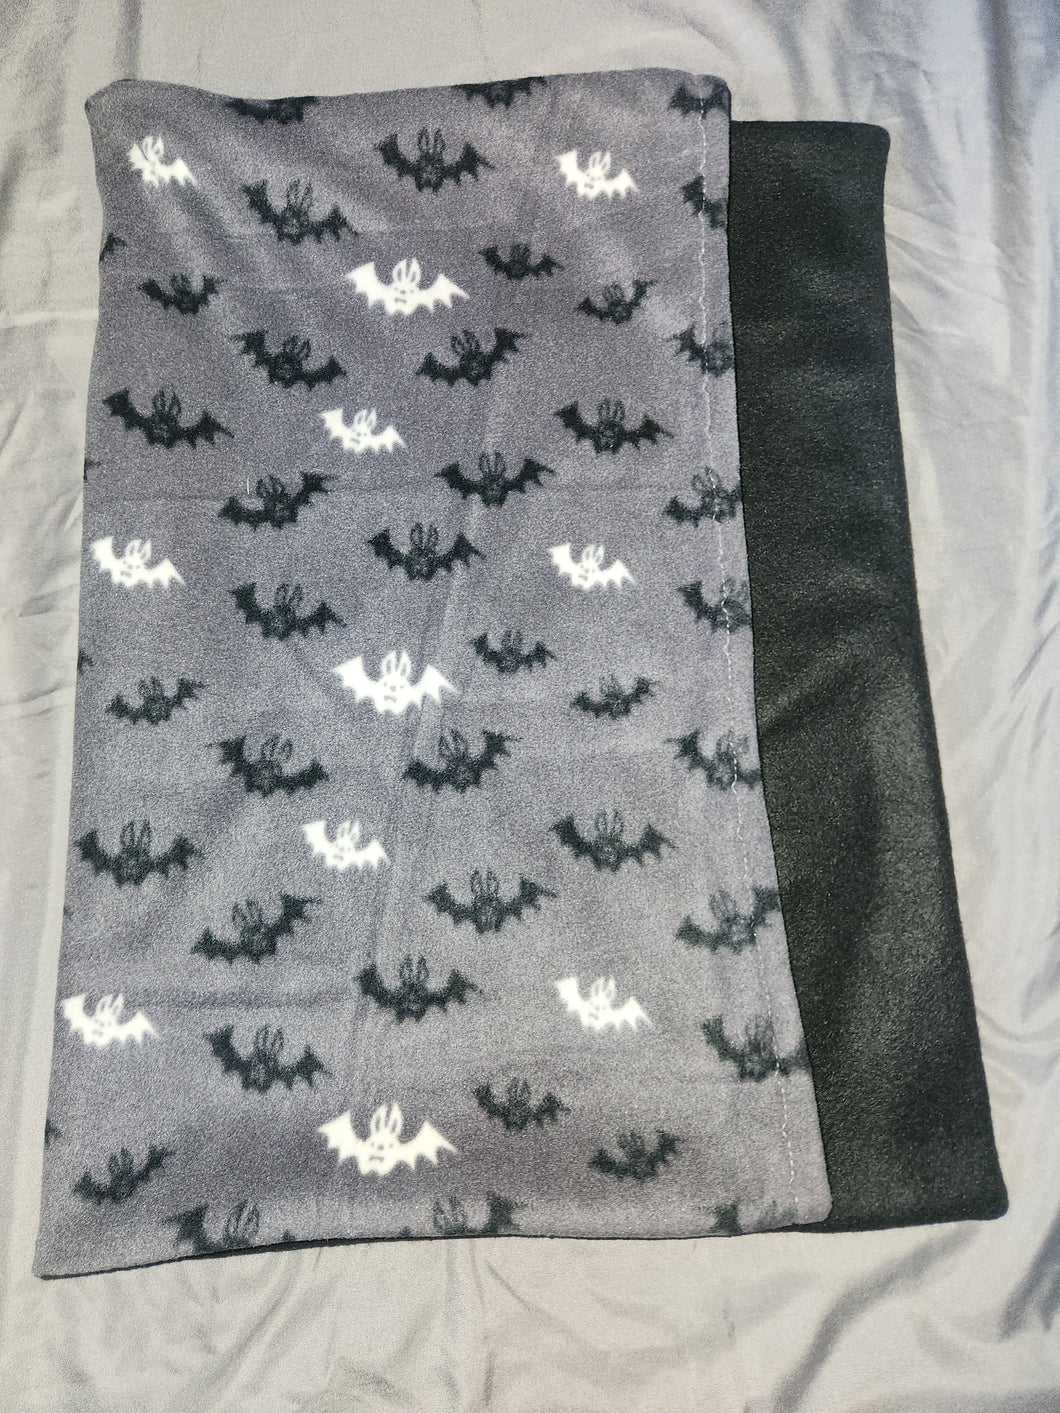 Pillowcase - Bats, Black and White on Grey Fleece::Black Fleece